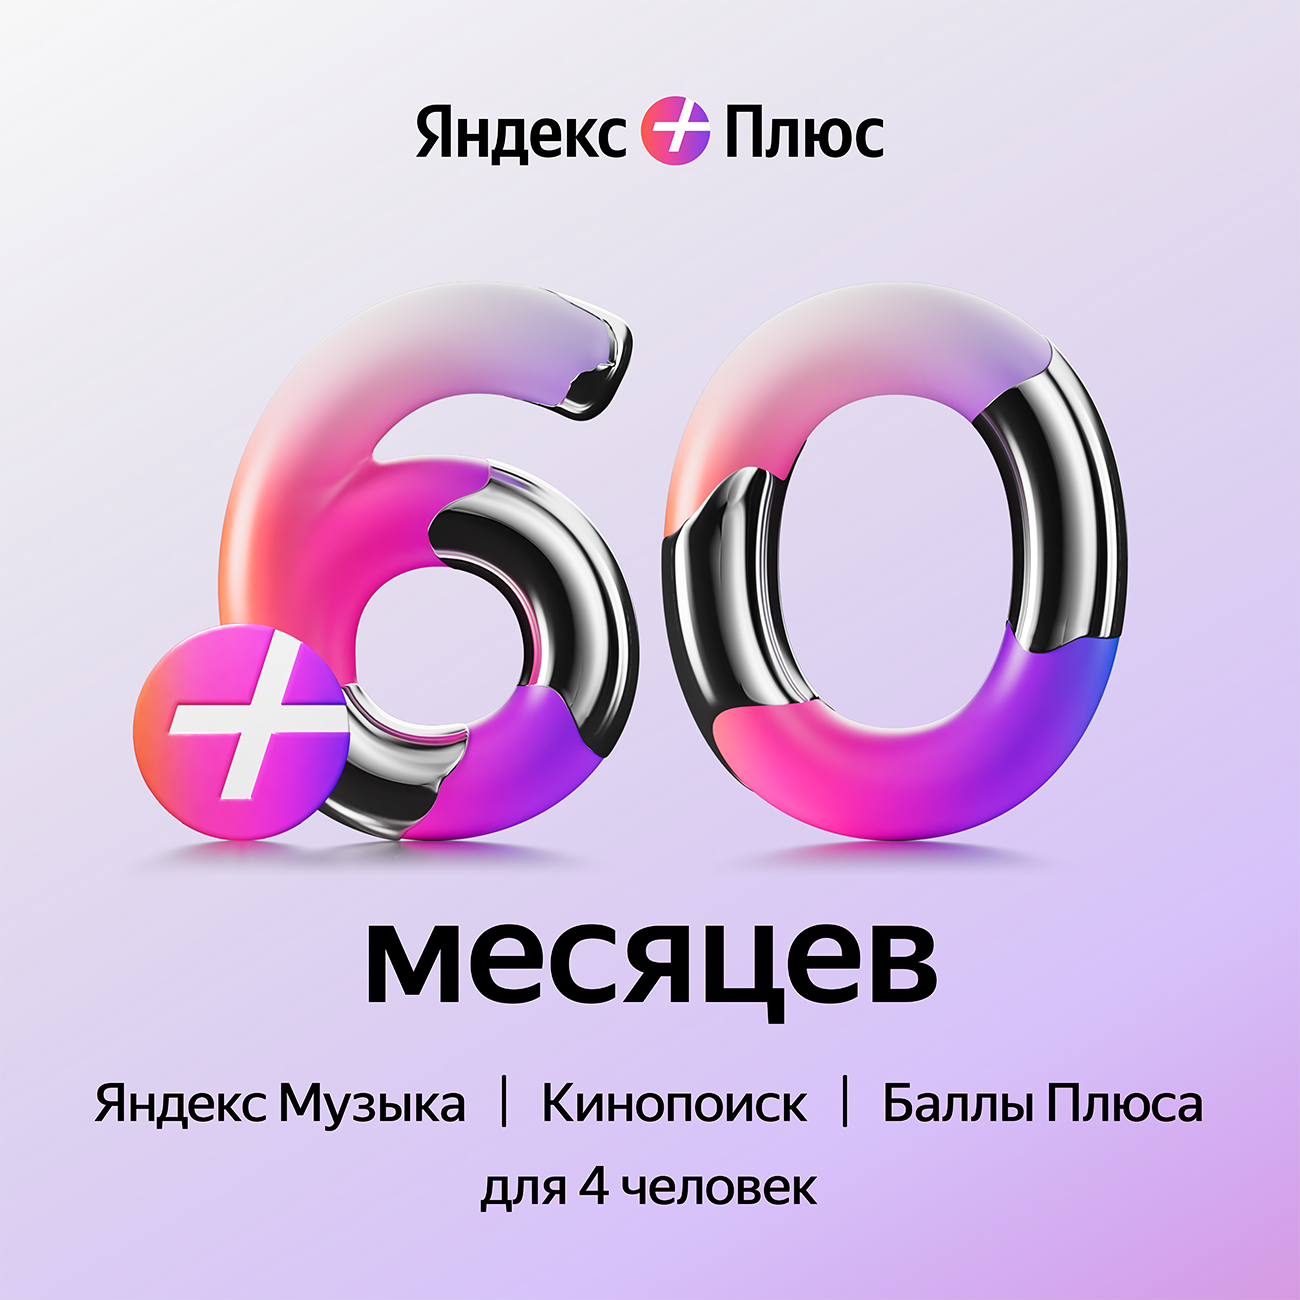 Подписка Яндекс Плюс (60 месяцев)